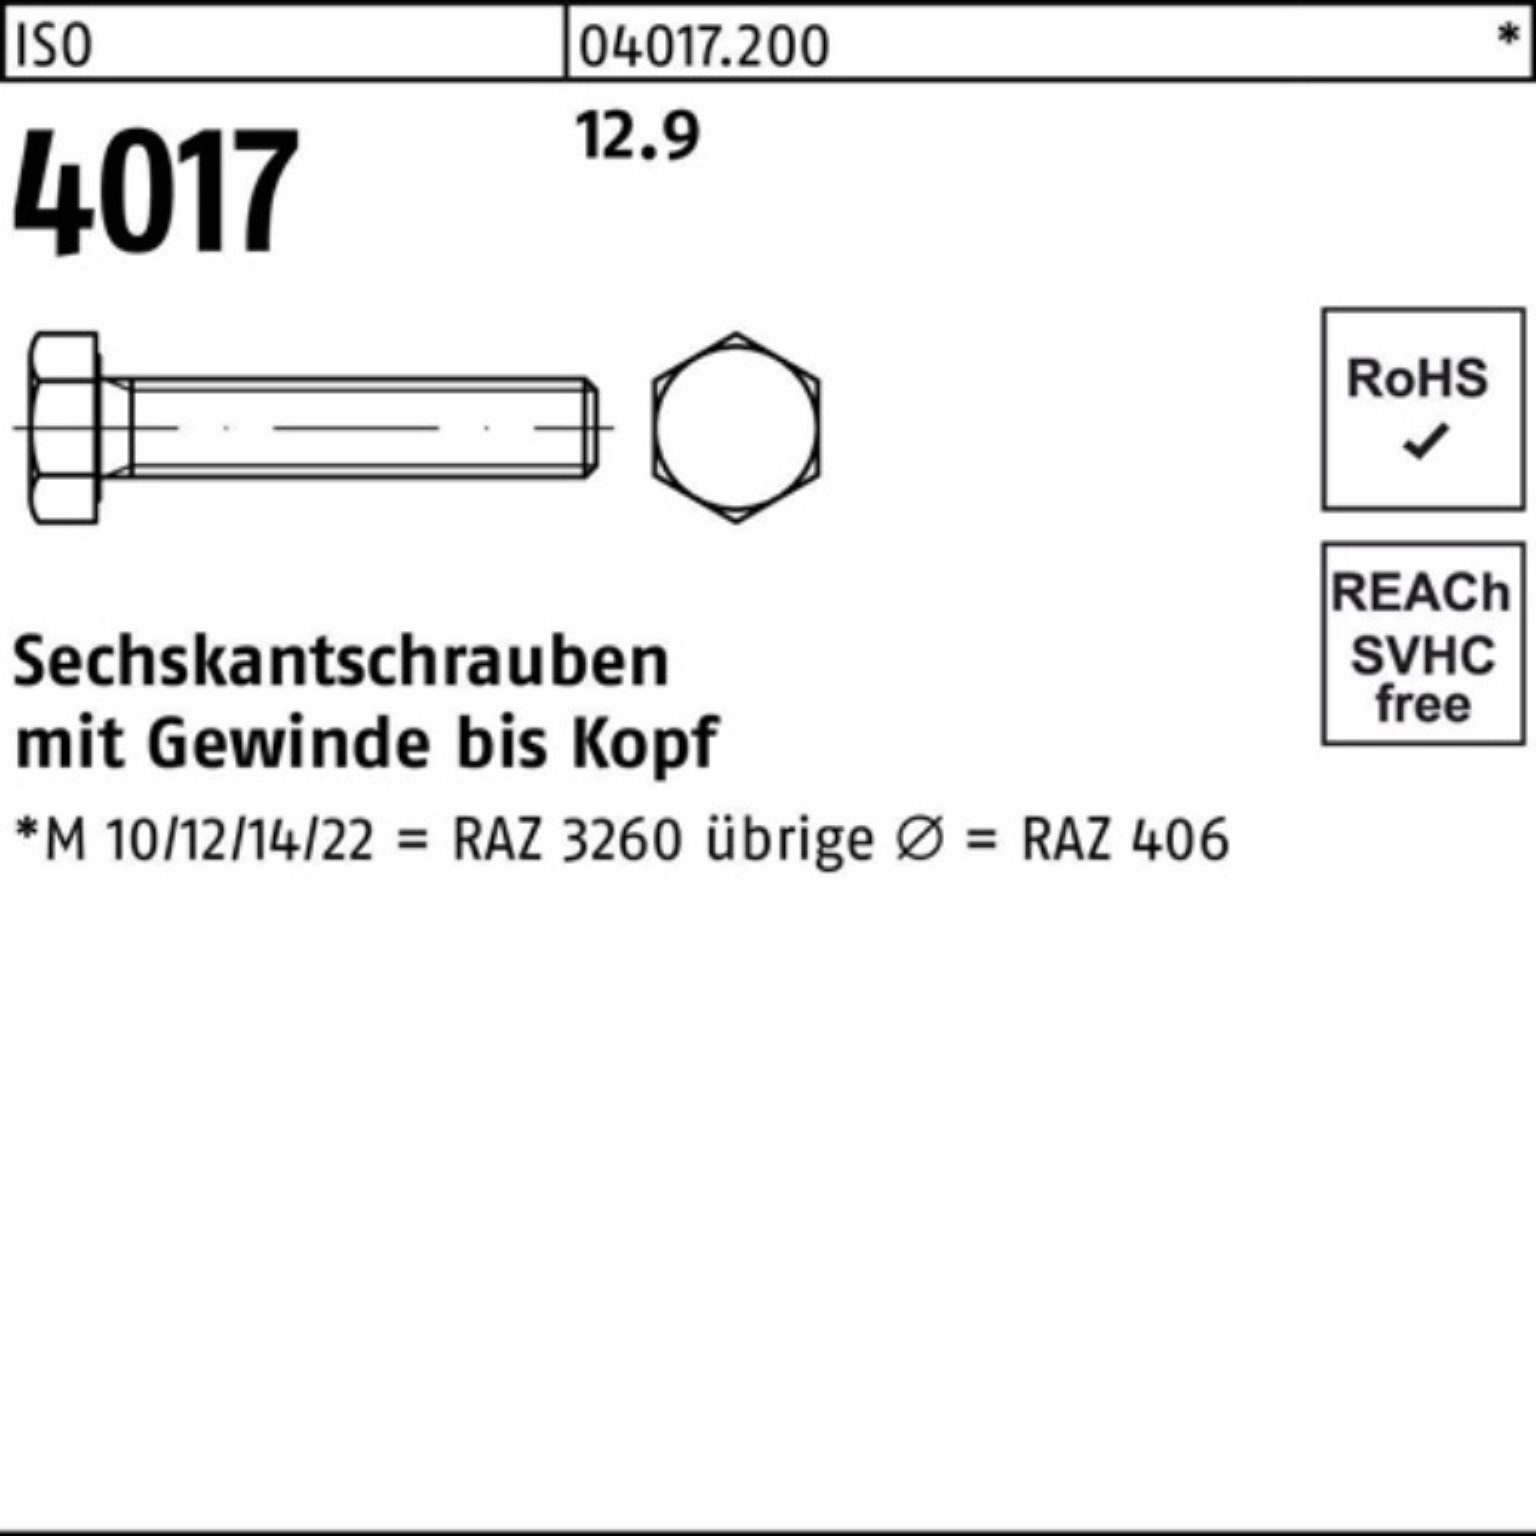 Bufab Sechskantschraube 12.9 100er ISO 100 Stück 60 VG Sechskantschraube 4017 ISO M10x 4 Pack